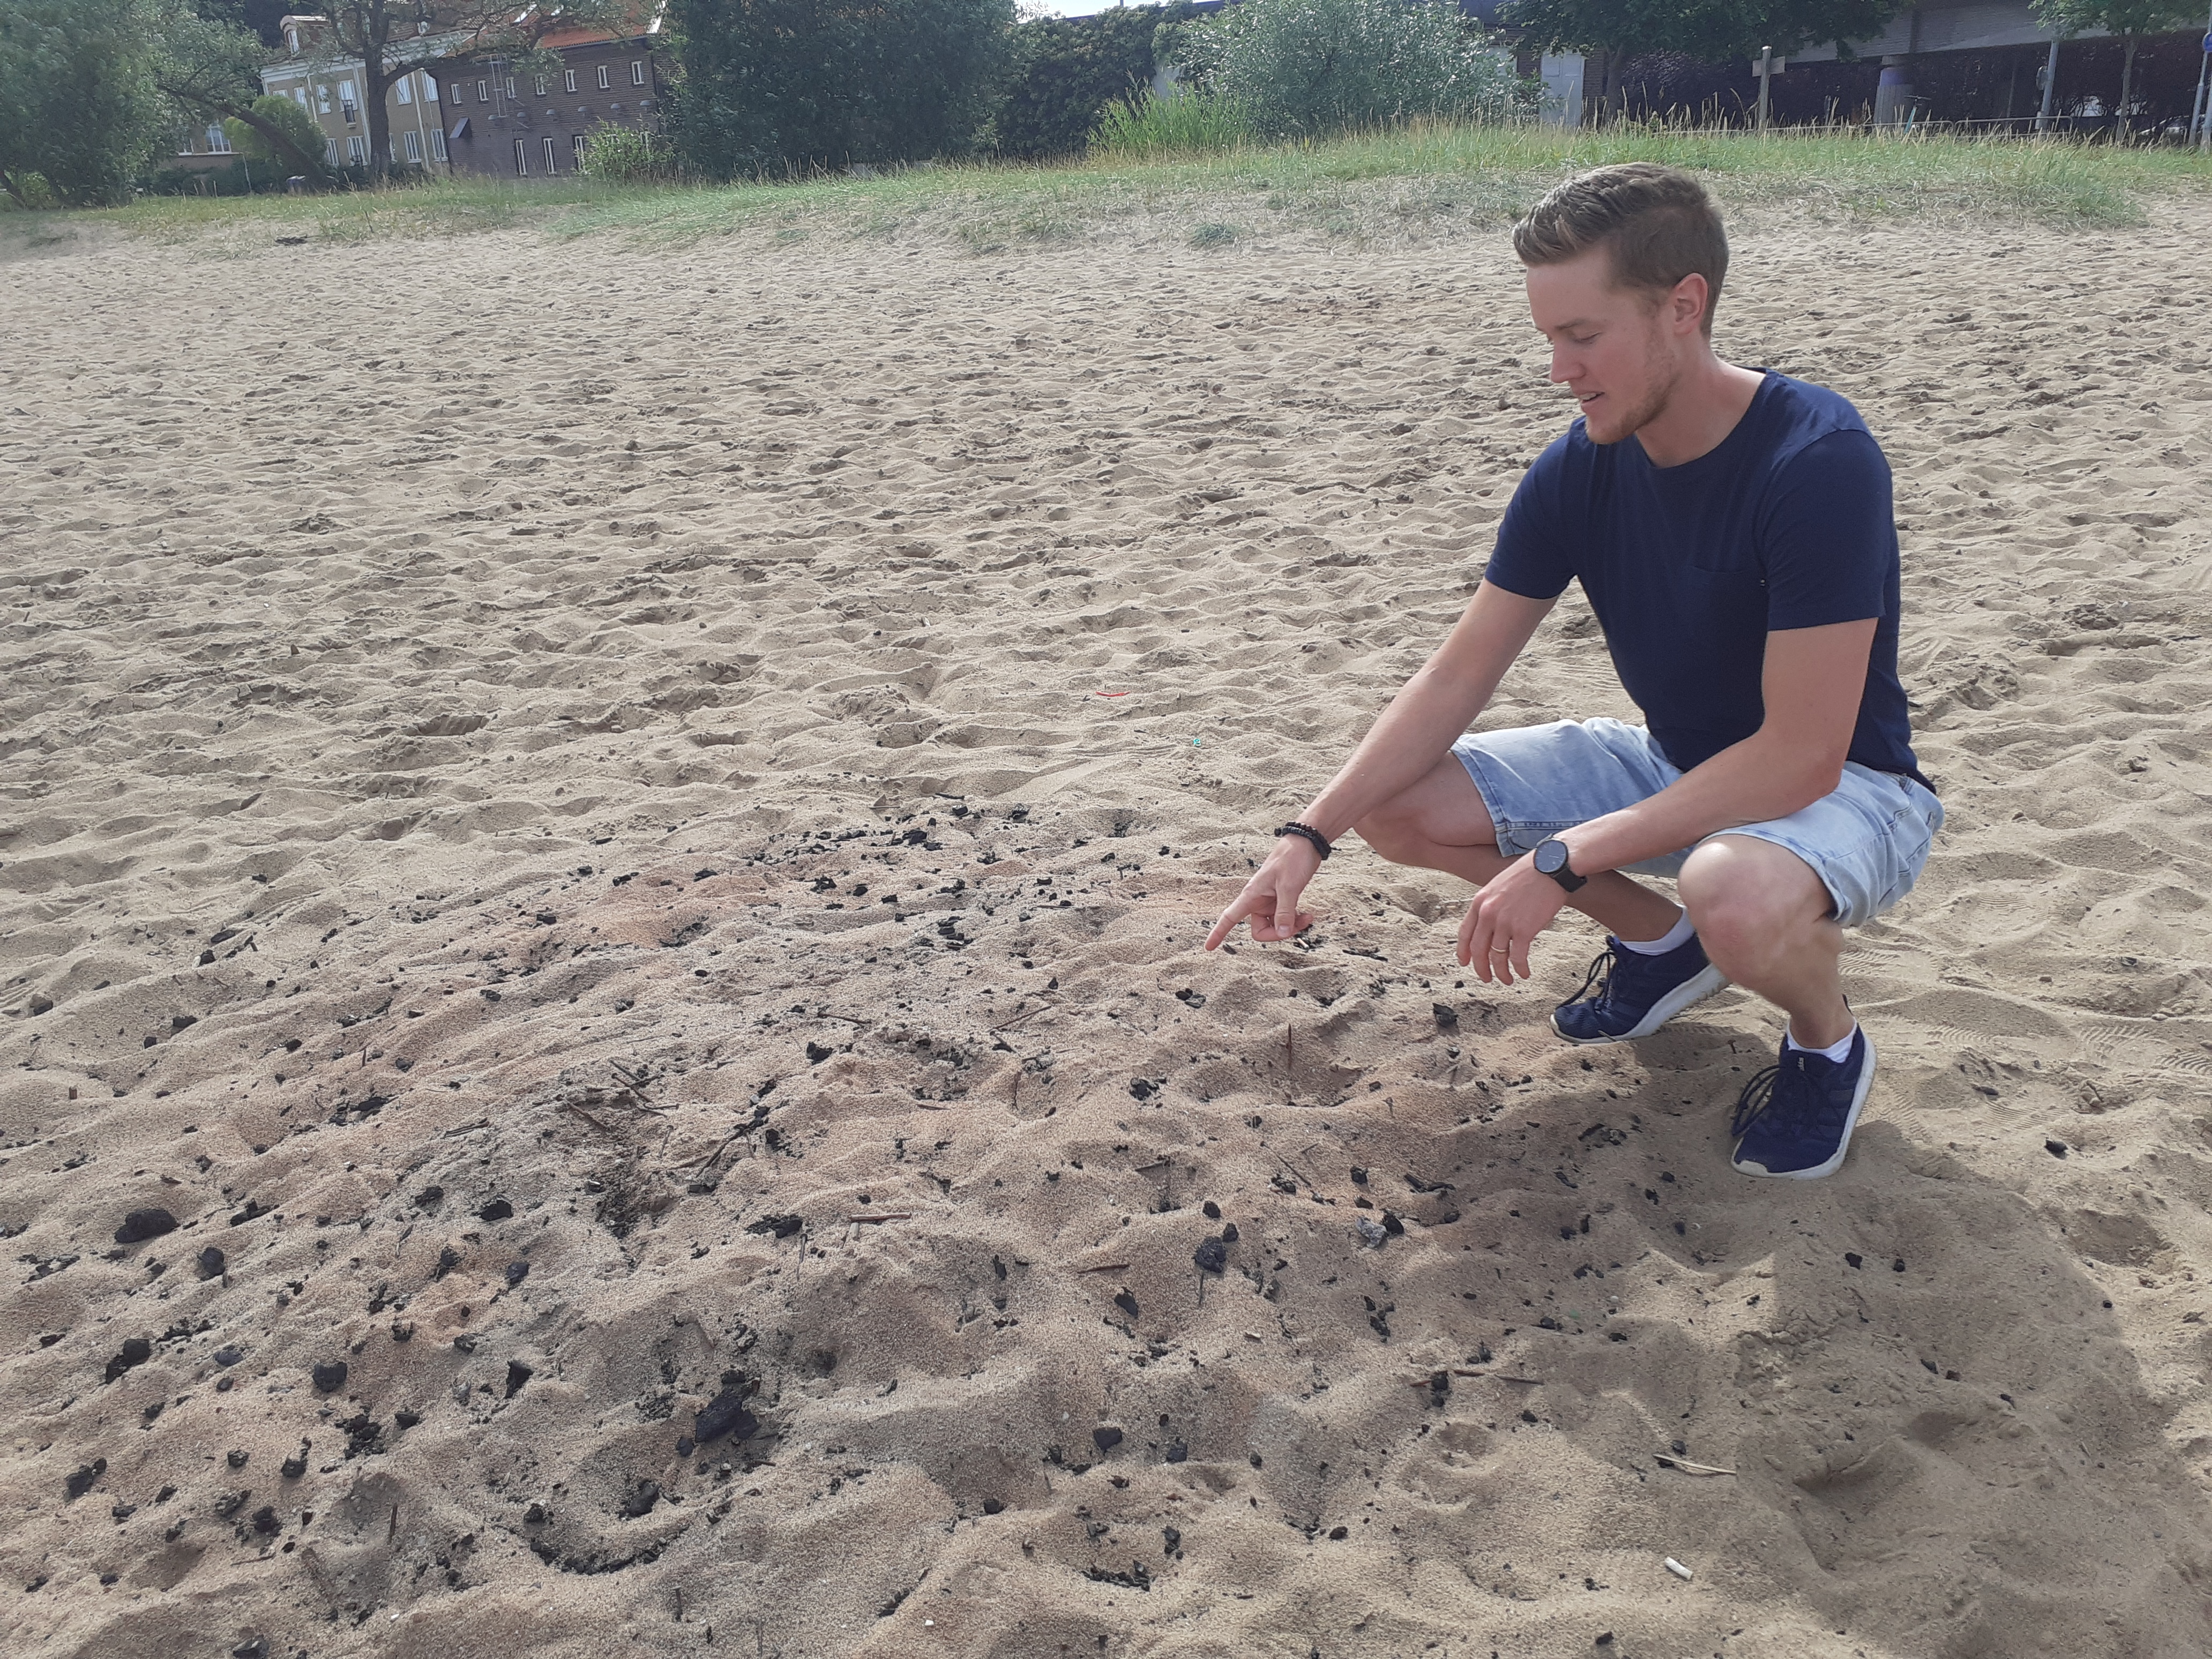 Arvid Nilsson visar att någon har försökt gömma sin gamla grillkol i sanden.